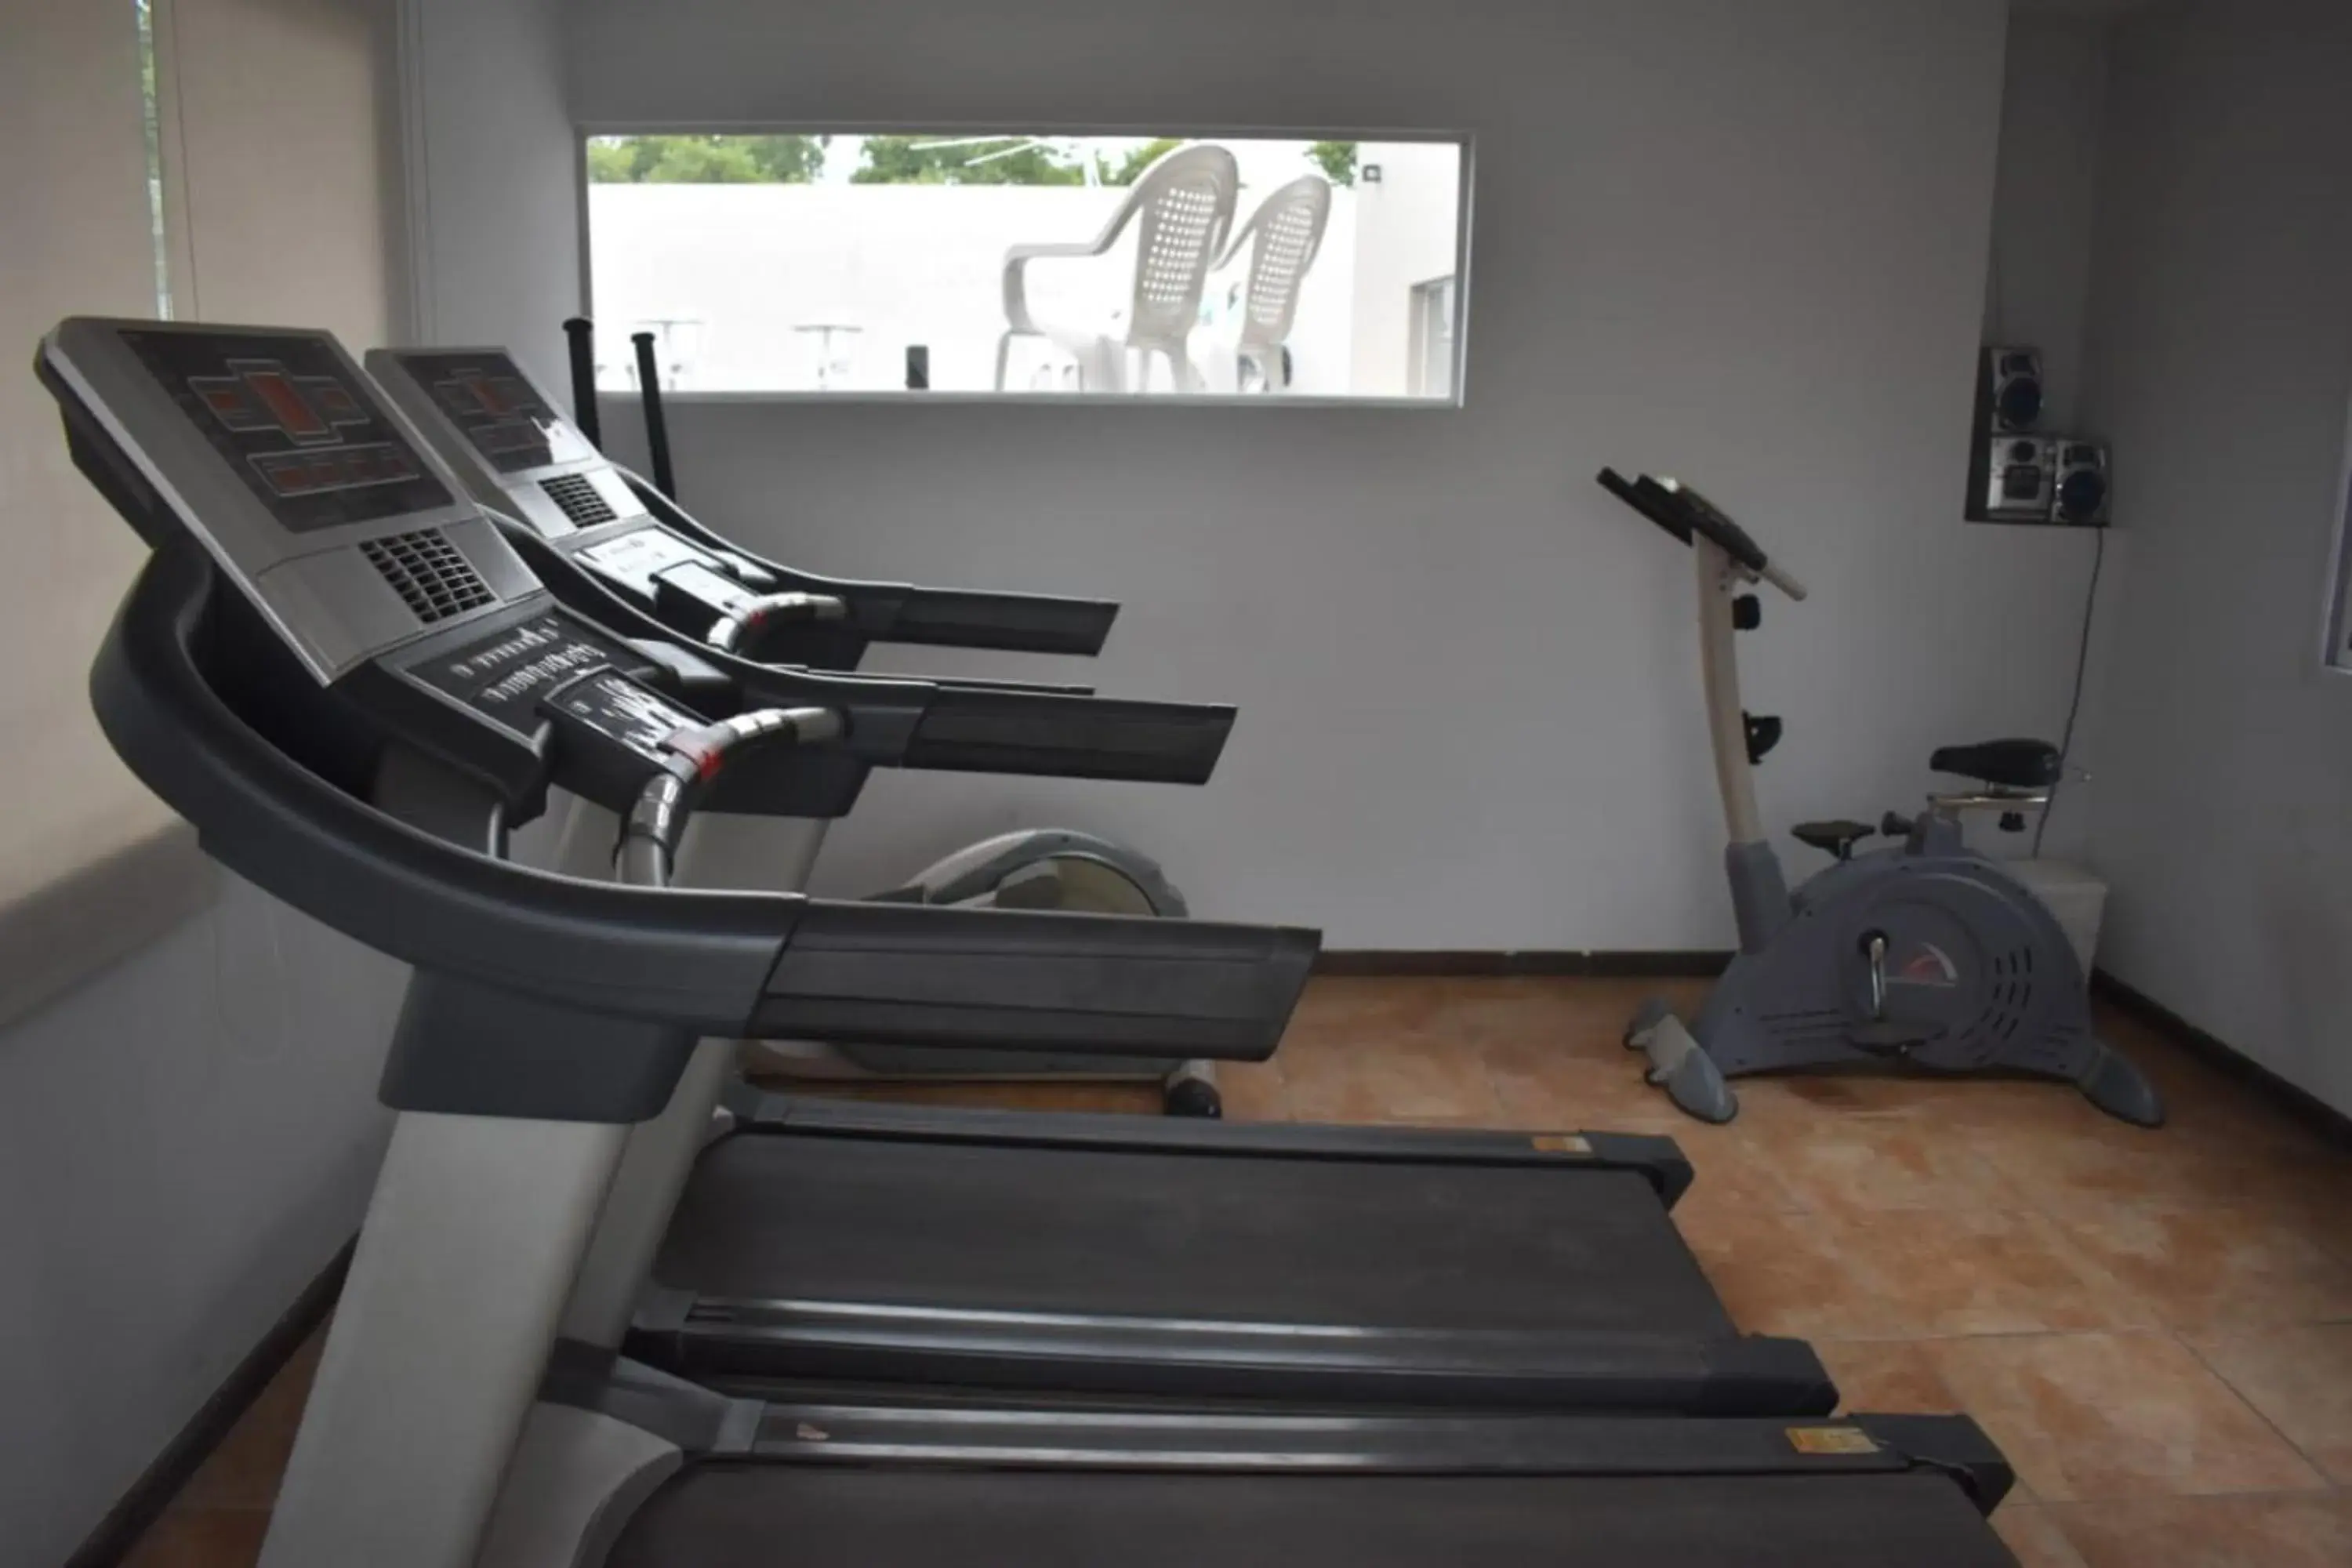 Fitness centre/facilities, Fitness Center/Facilities in DAKAR HOTEL